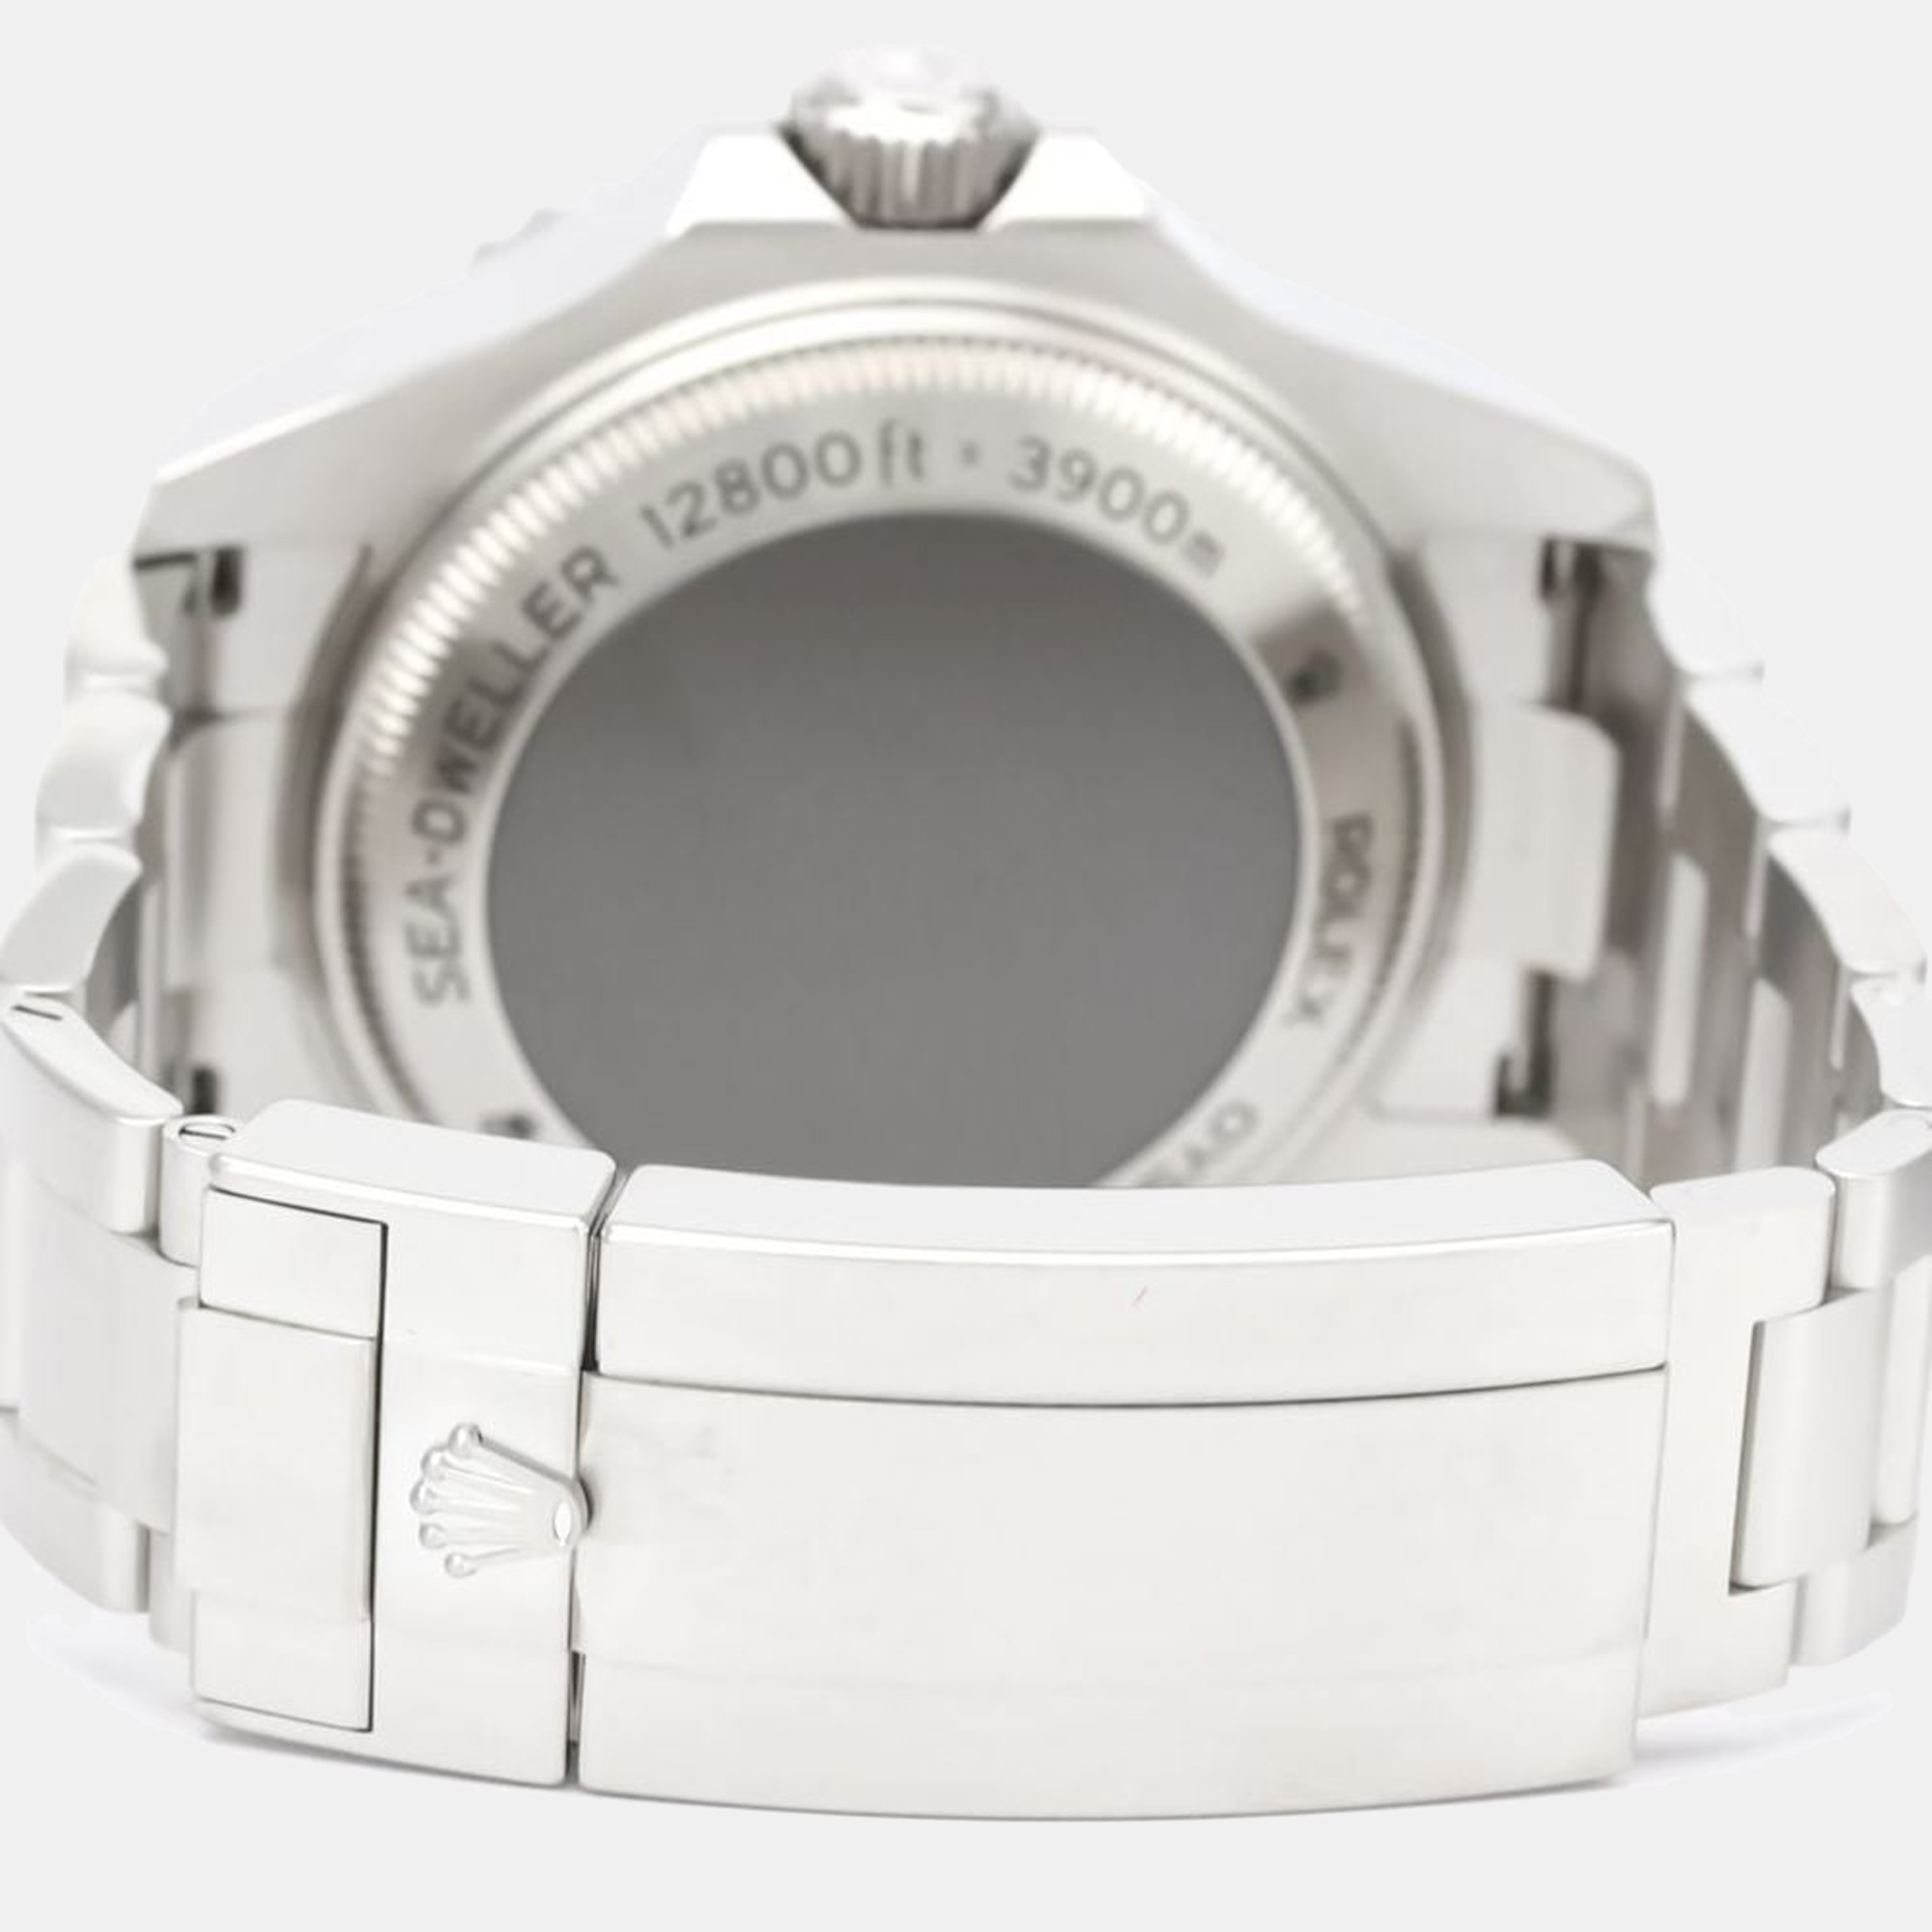 Rolex Black Stainless Steel Sea-Dweller Deepsea 126660 Automatic Men's Wristwatch 44 Mm